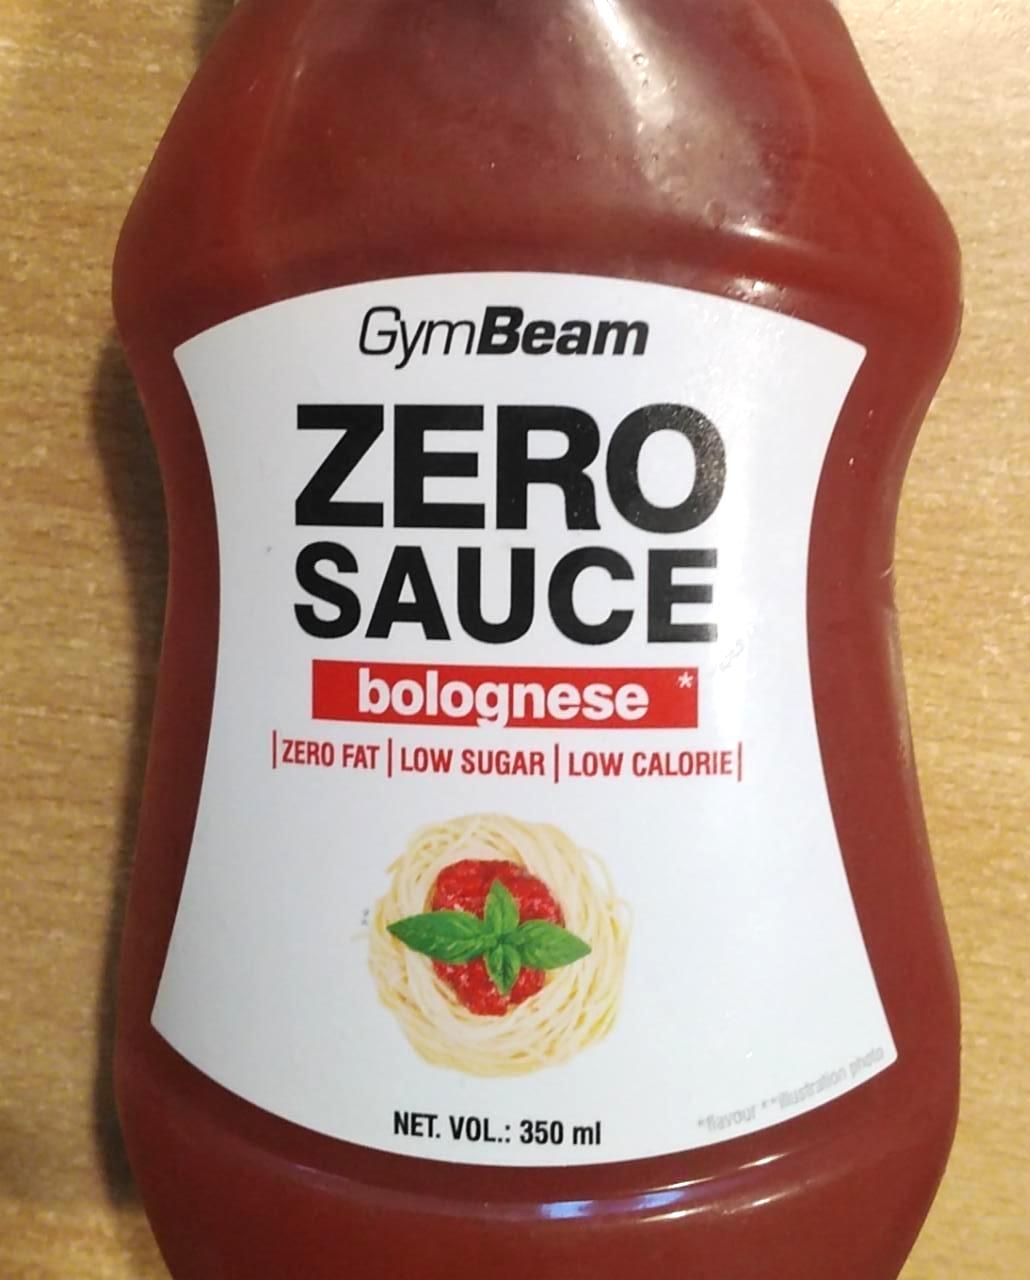 Képek - Zero sauce bolognese GymBeam